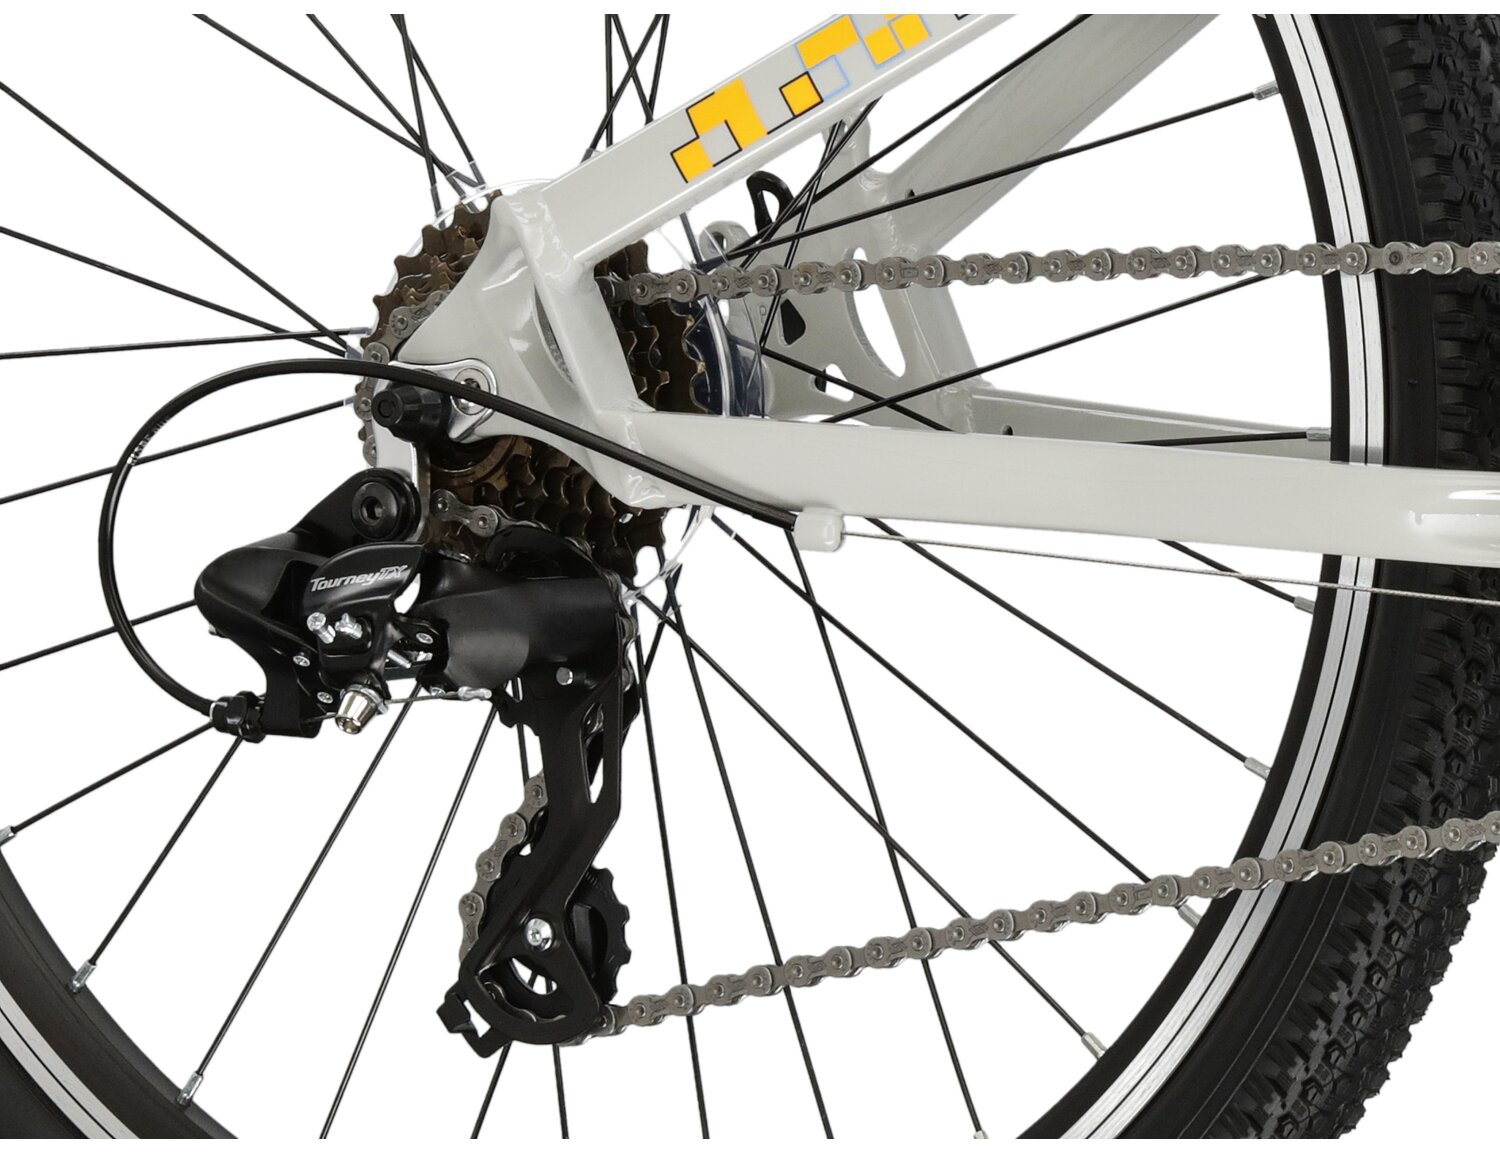  Tylna ośmiobiegowa przerzutka Shimano Tourney TX800 oraz hamulce v-brake w rowerze juniorskim KROSS Dust JR 1.0 